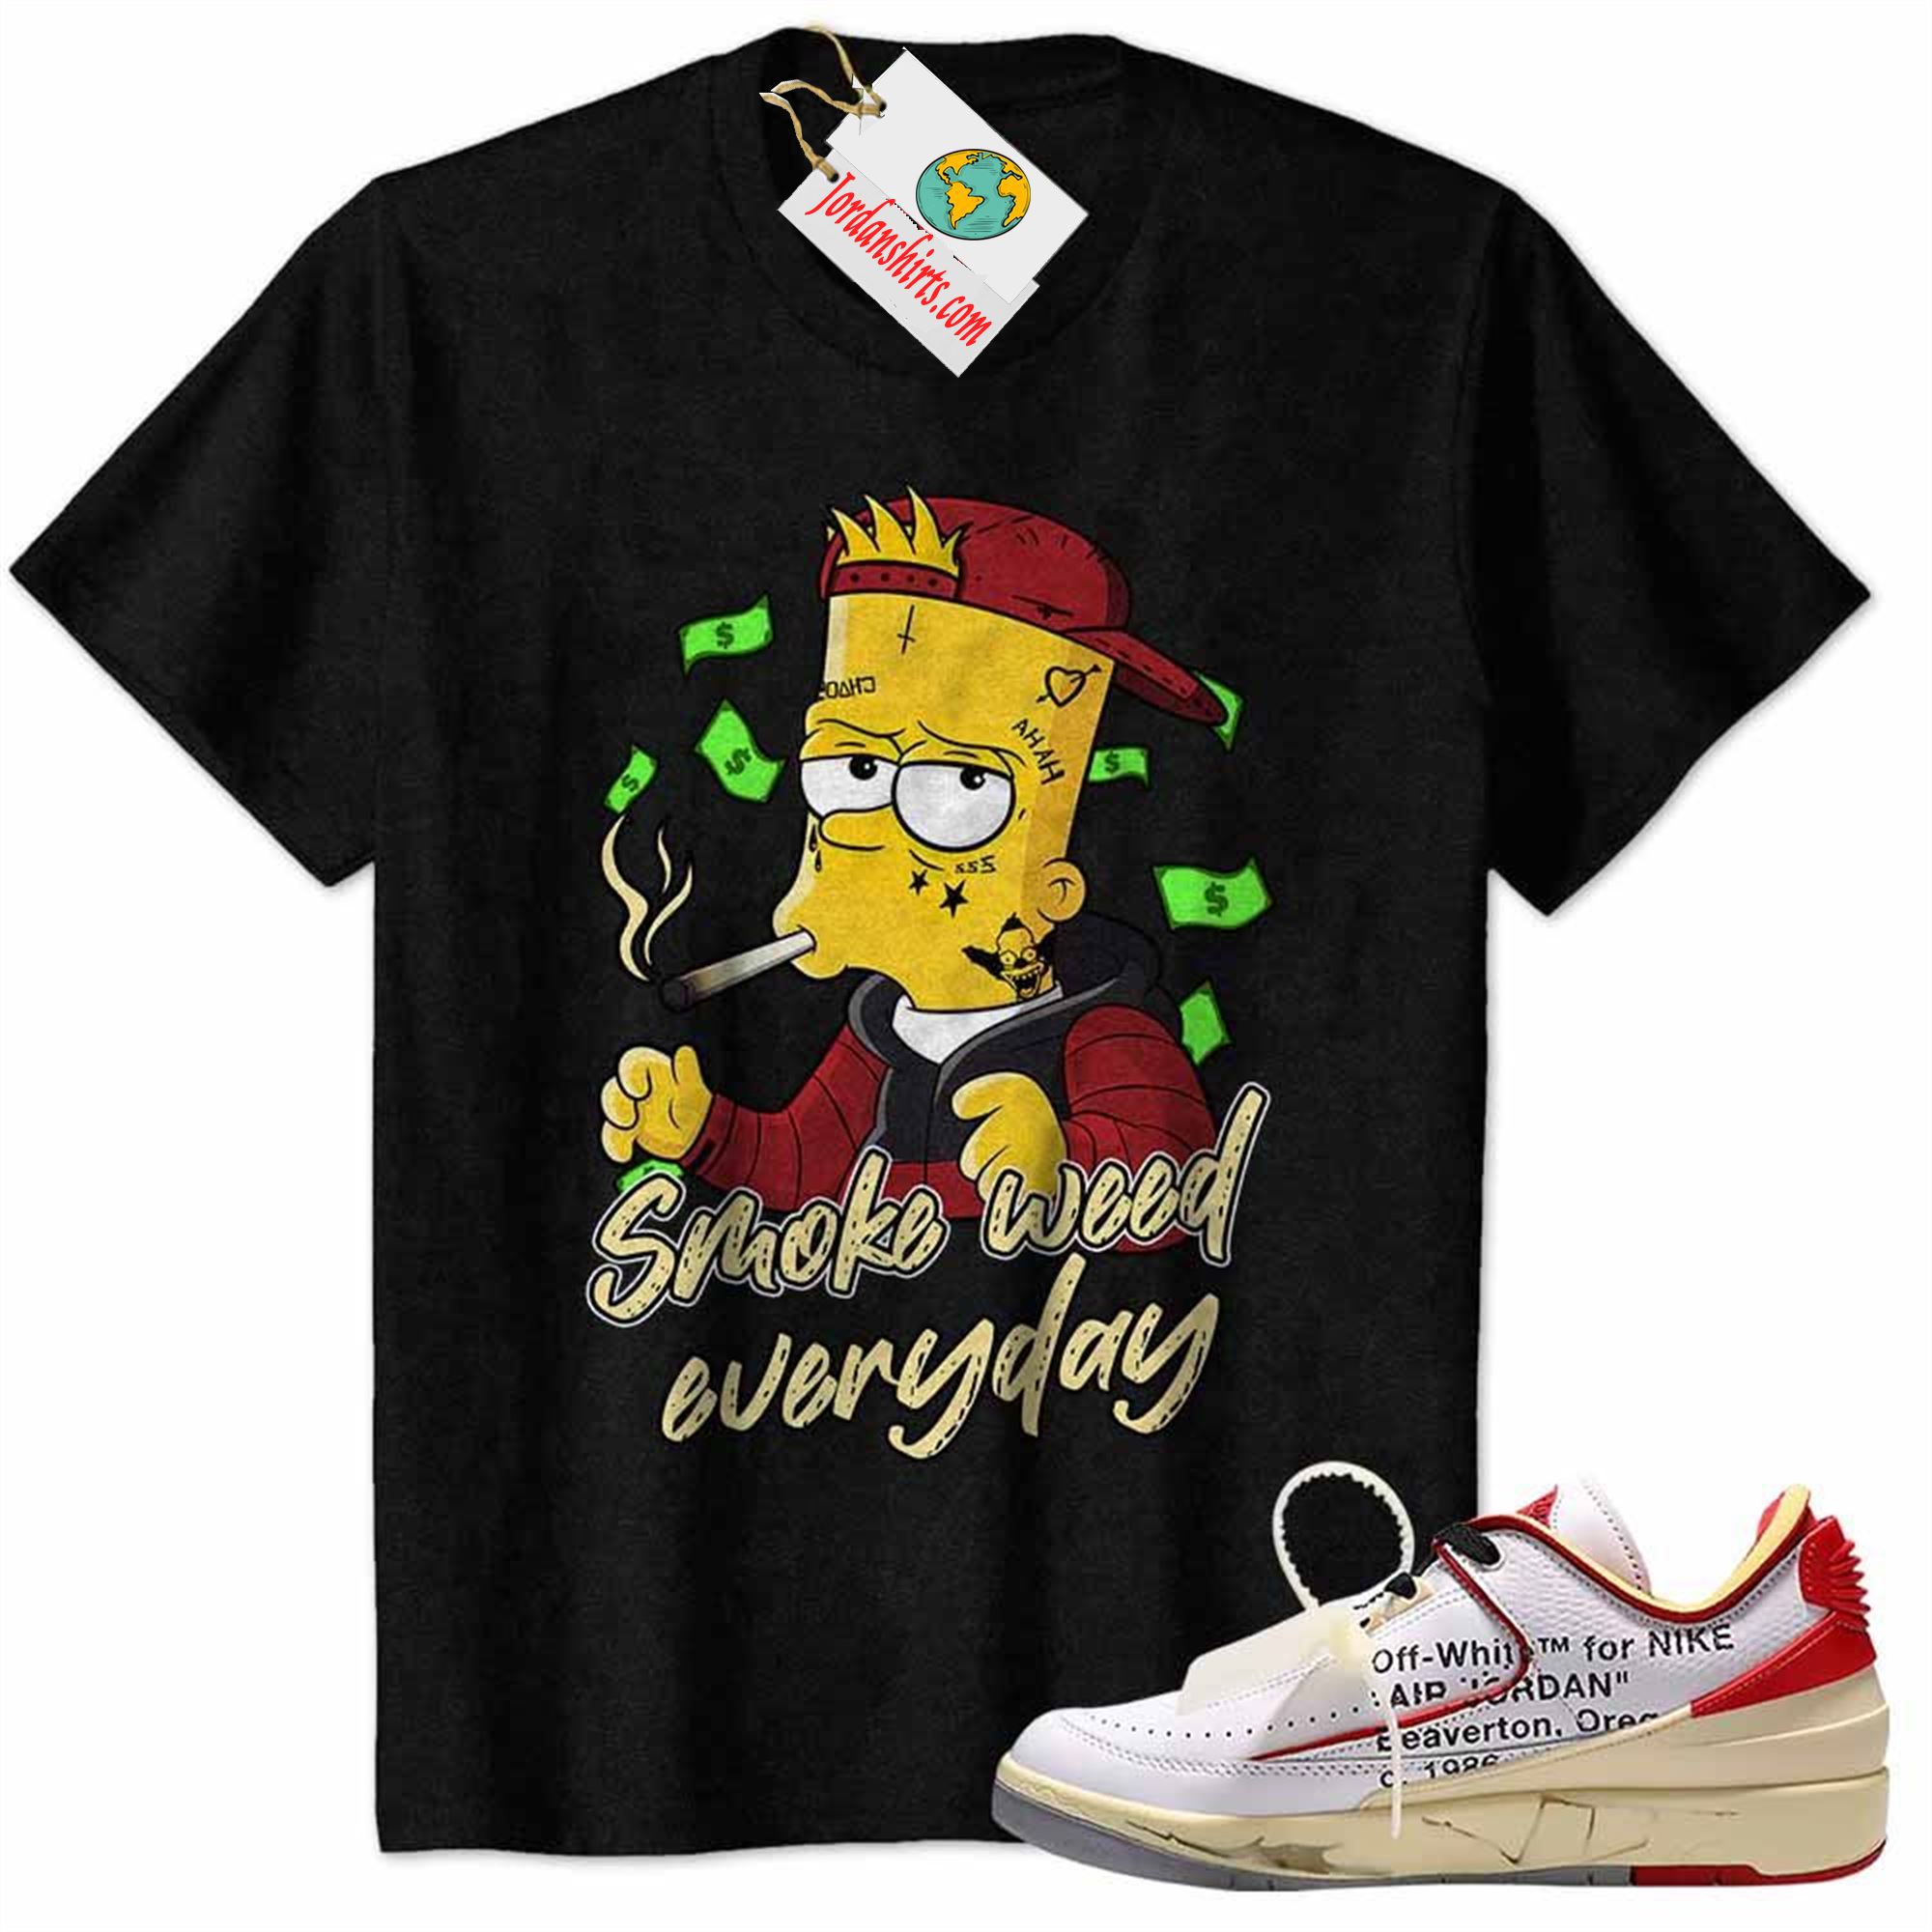 Jordan 2 Shirt, Bart Simpson Smoke Weed Everyday Black Air Jordan 2 Low White Red Off-white 2s Plus Size Up To 5xl